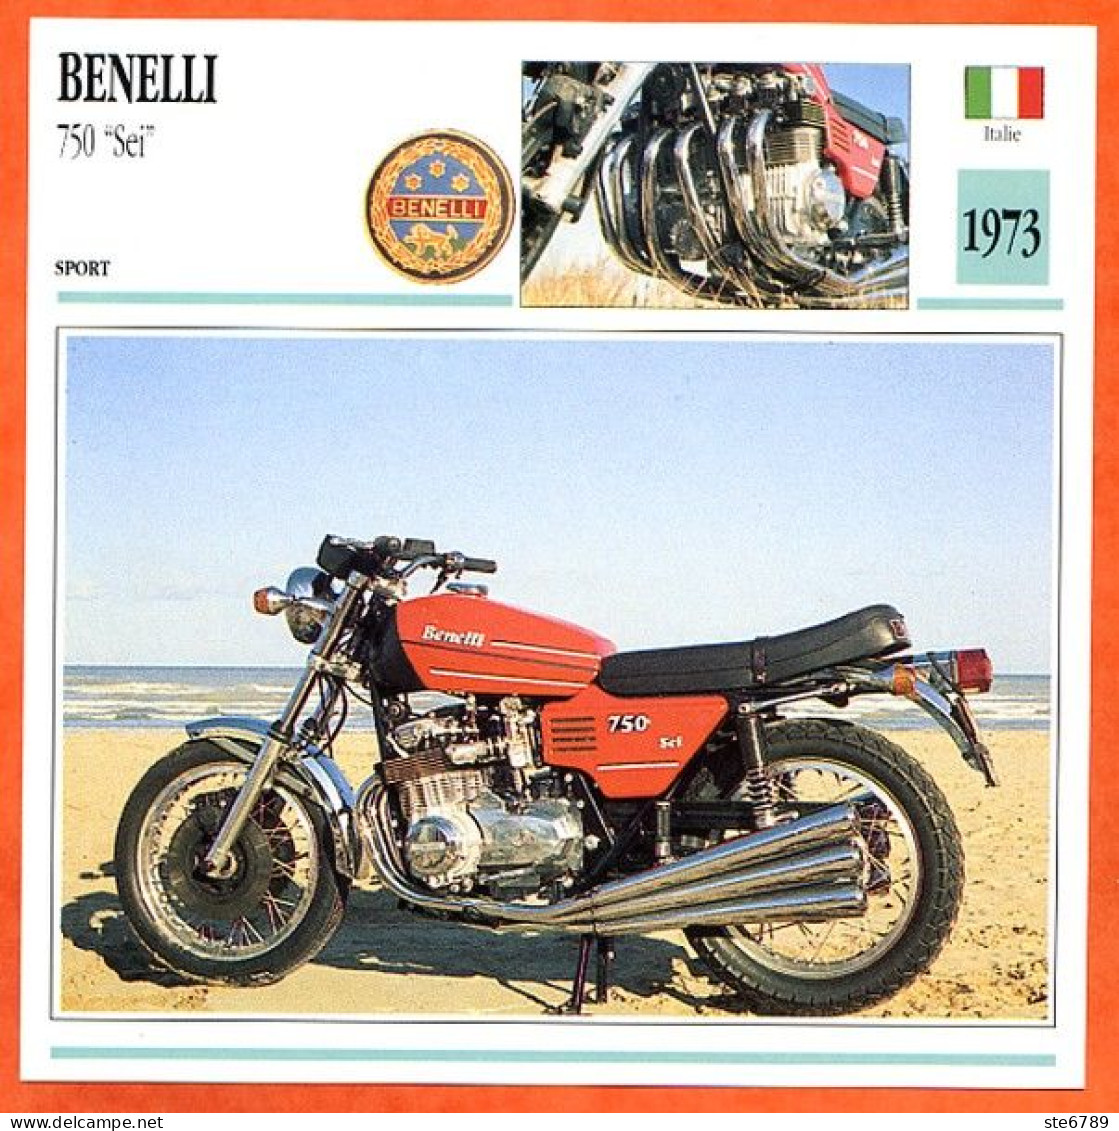 BENELLI 750 Sei  1973 Italie Fiche Technique Moto - Sport